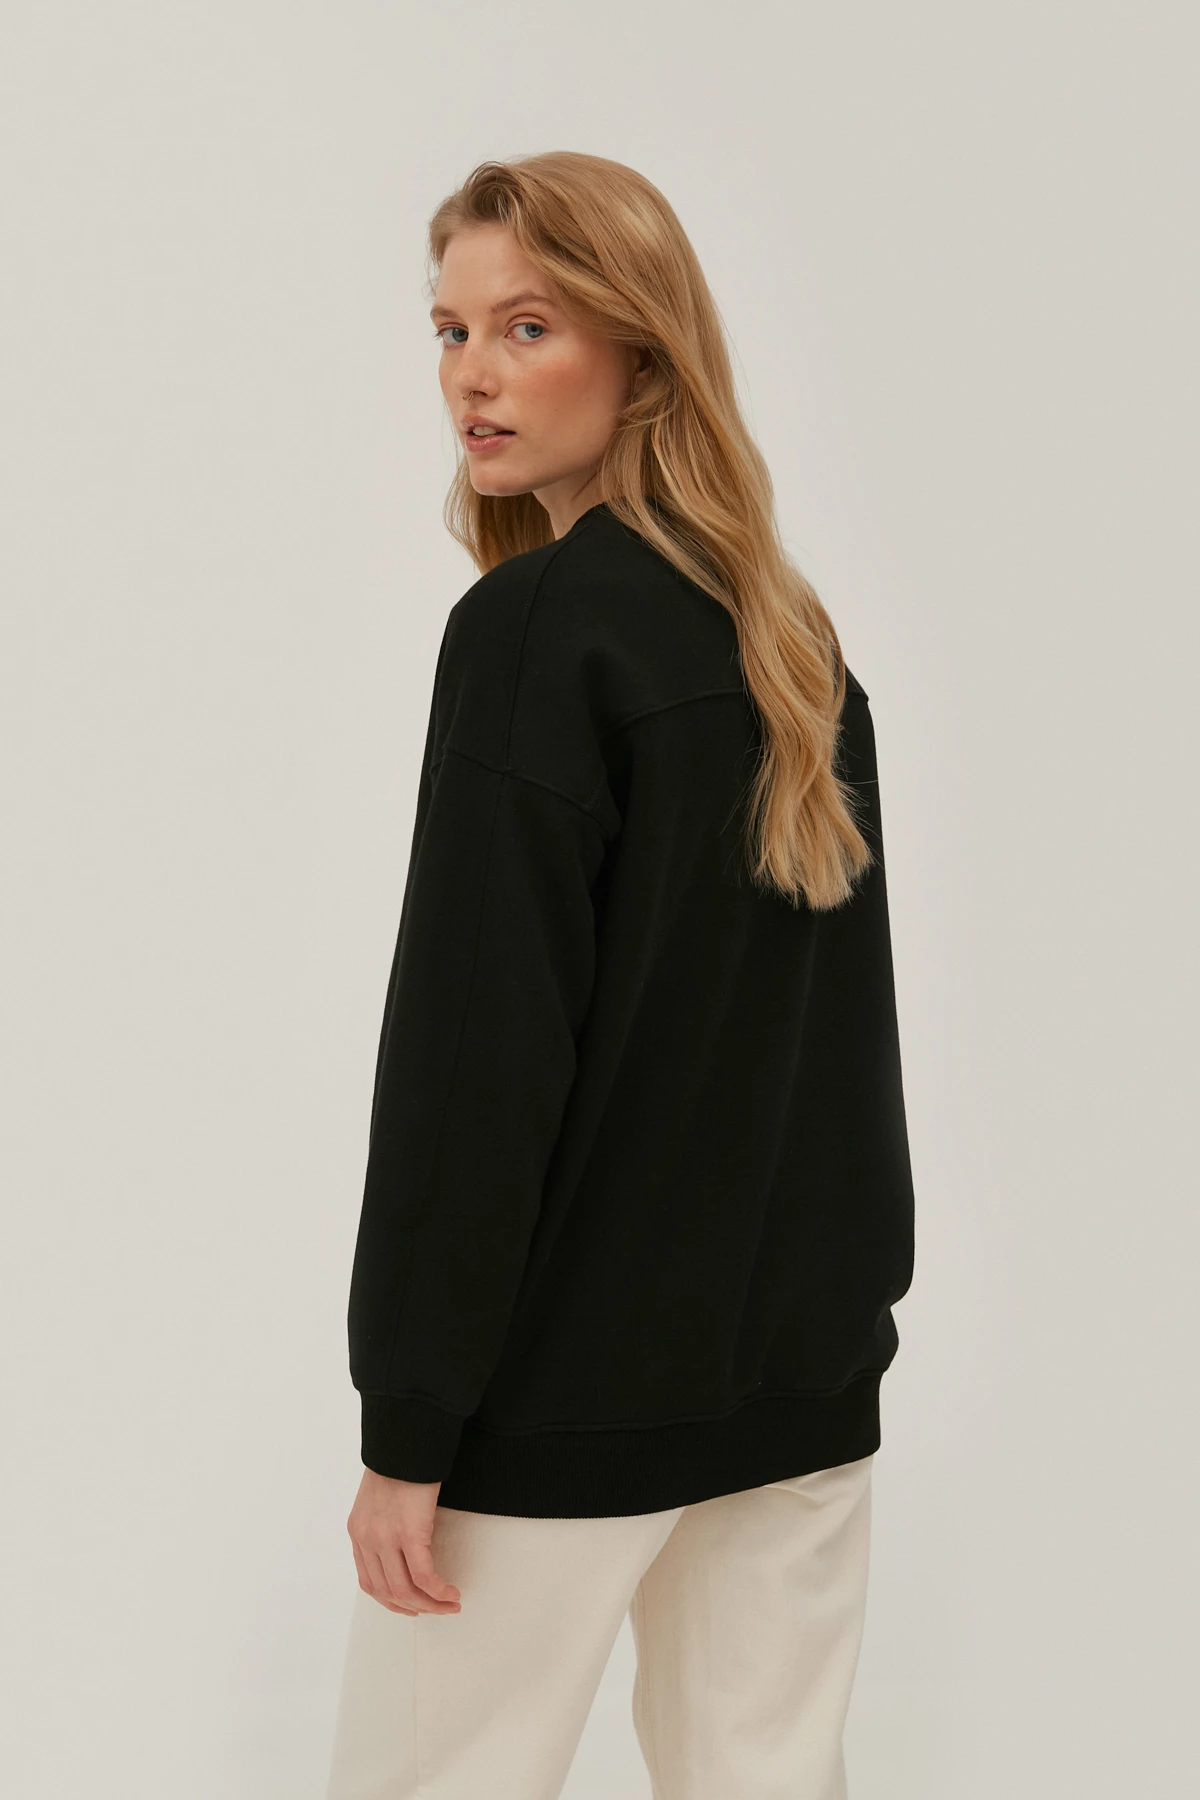 Black fleece jersey sweatshirt with "Spoiler" print, photo 5